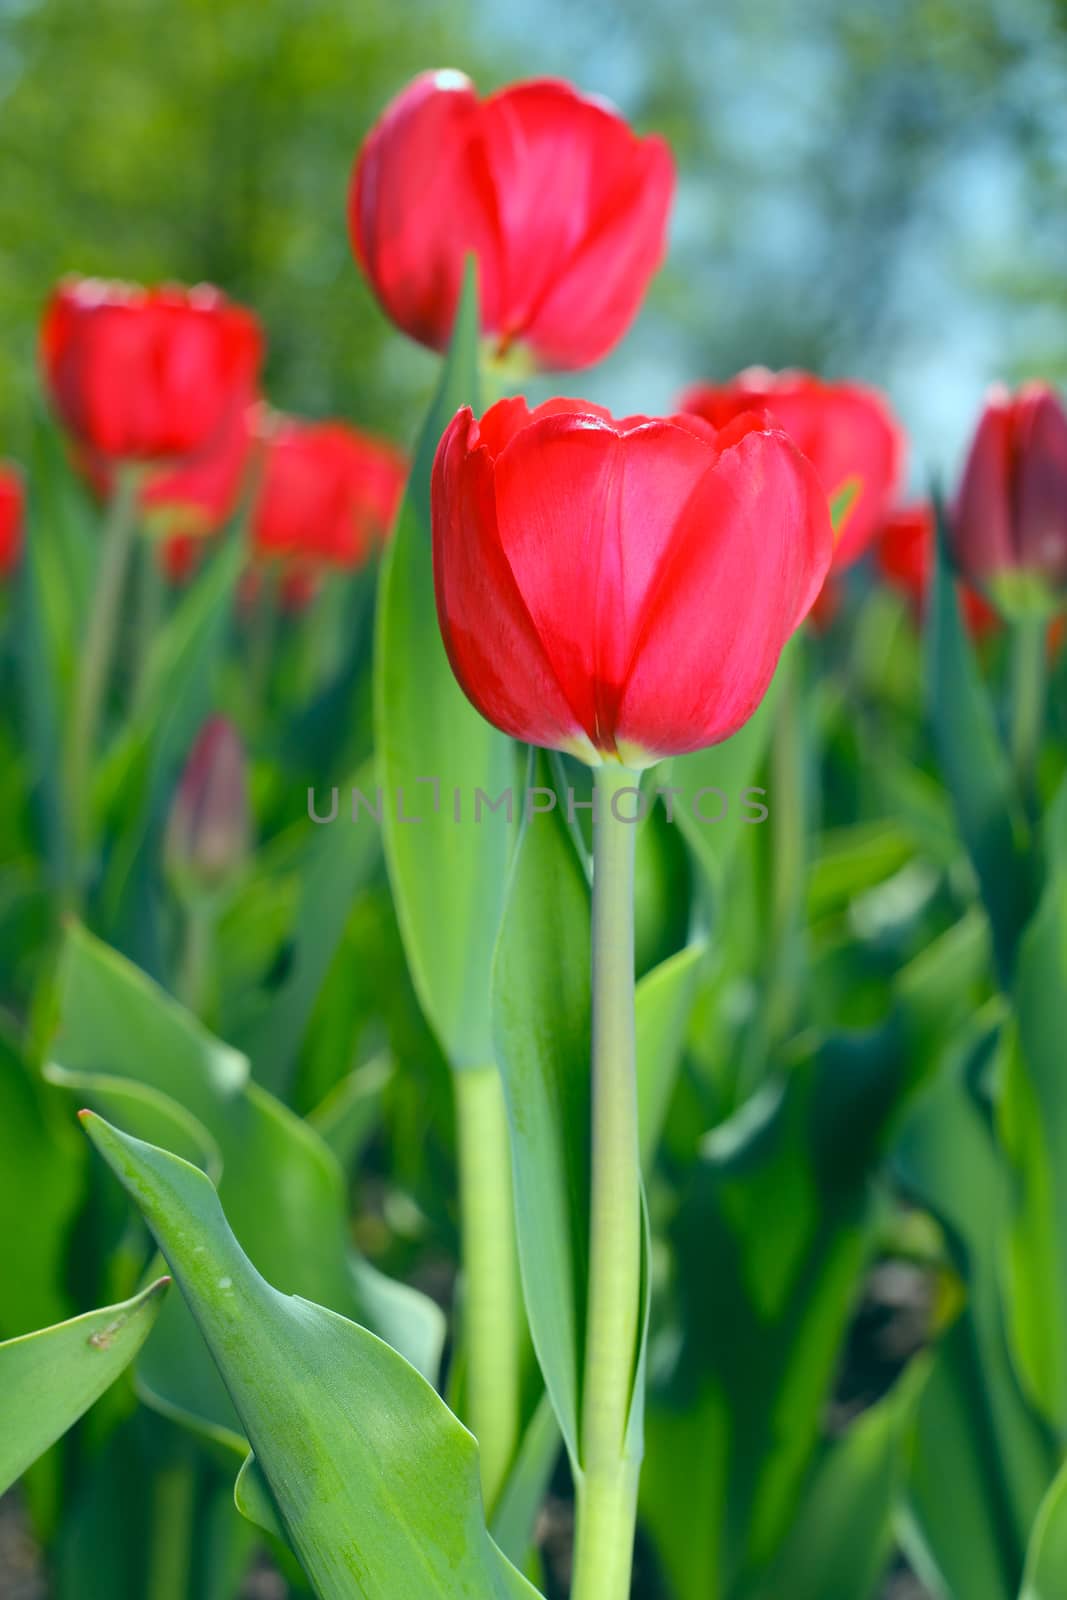 Red tulips in the garden by destillat